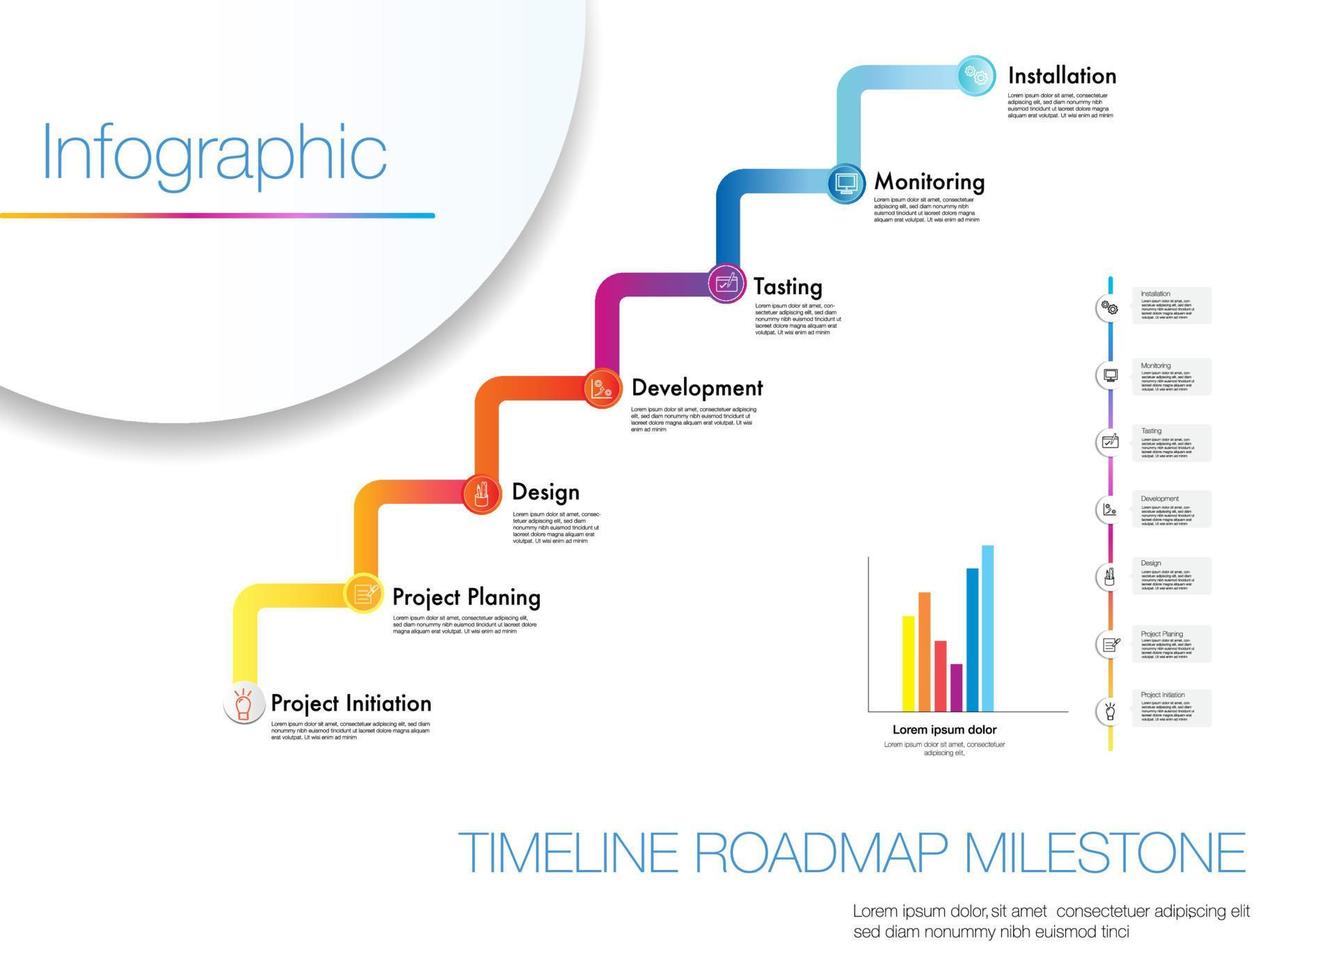 infographic mall 7 nivå modern disciplin adressering på vilket sätt till komplett en projekt i en vissa tidsram, stadier och utsedd Resurser installation.tidslinje projekt Diagram färdplan vektor